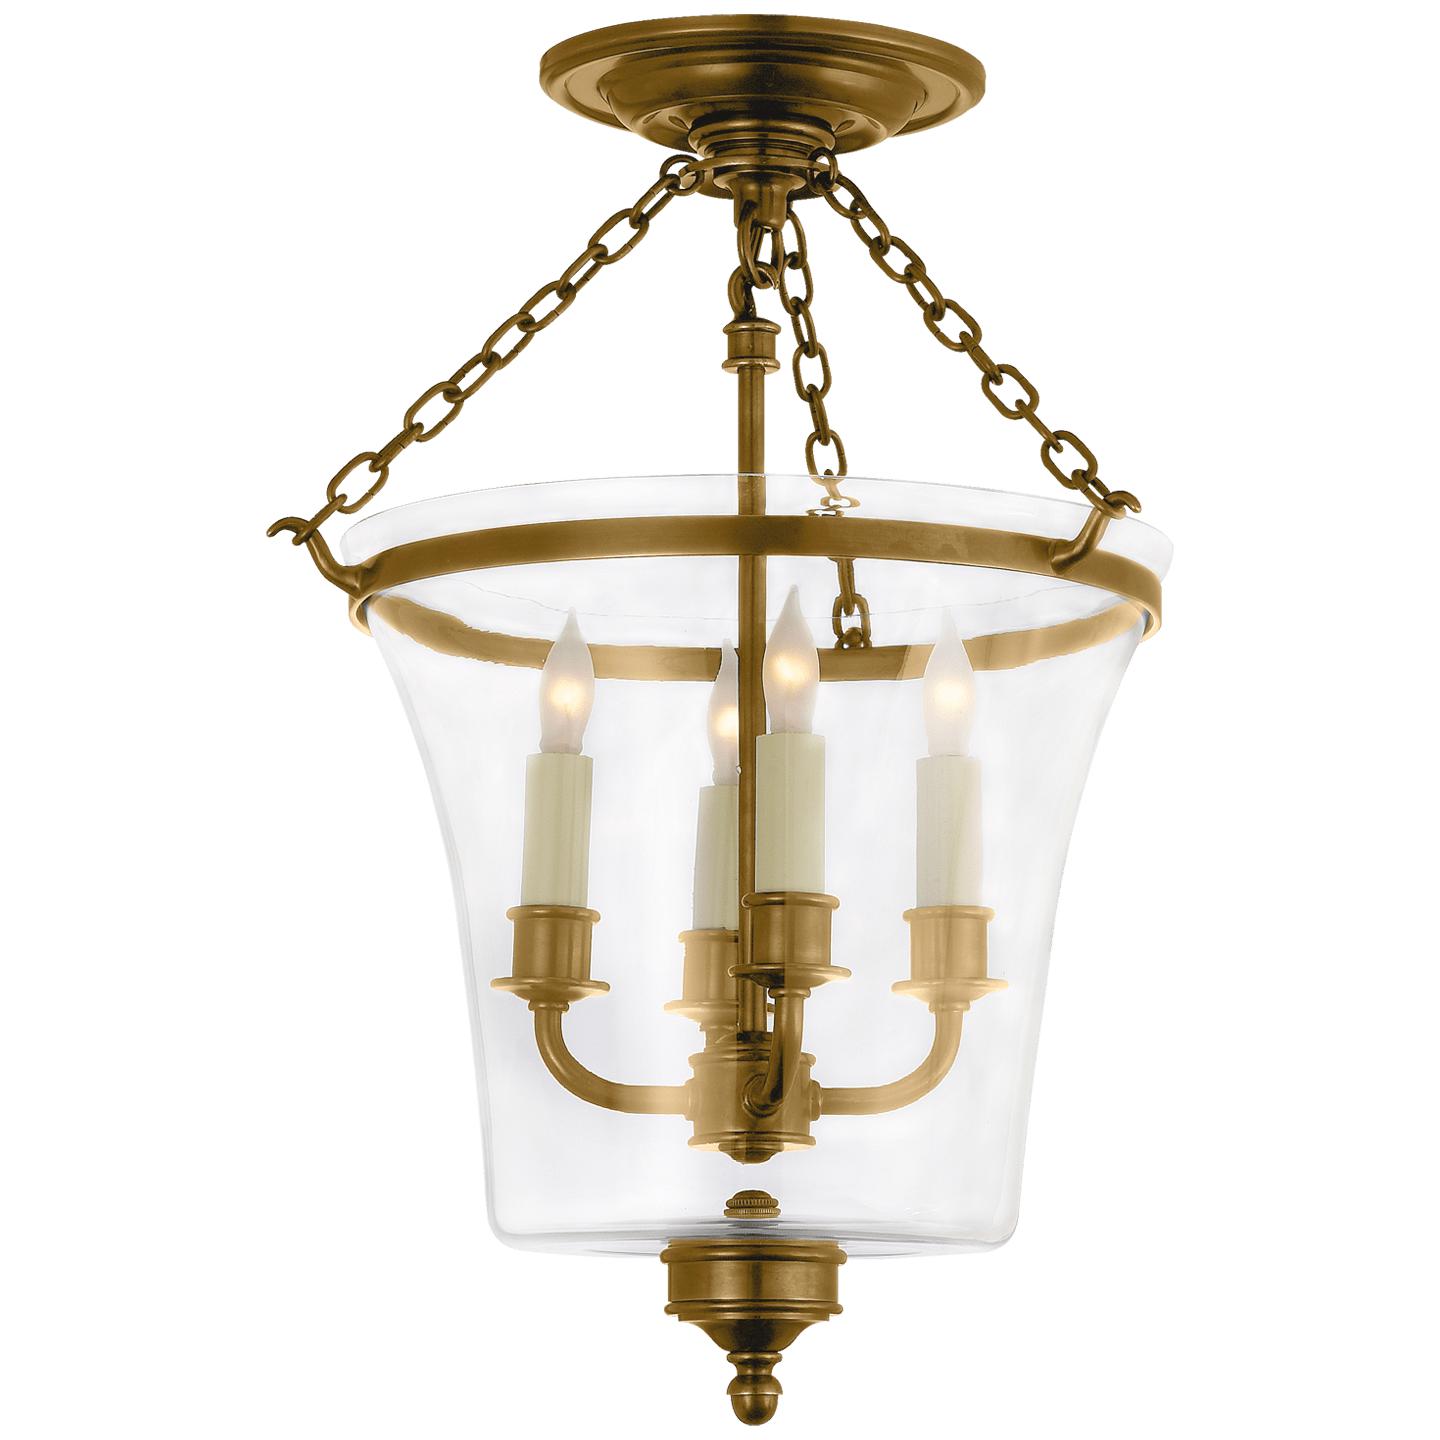 Купить Накладной светильник/Подвесной светильник Sussex Semi-Flush Bell Jar Lantern в интернет-магазине roooms.ru